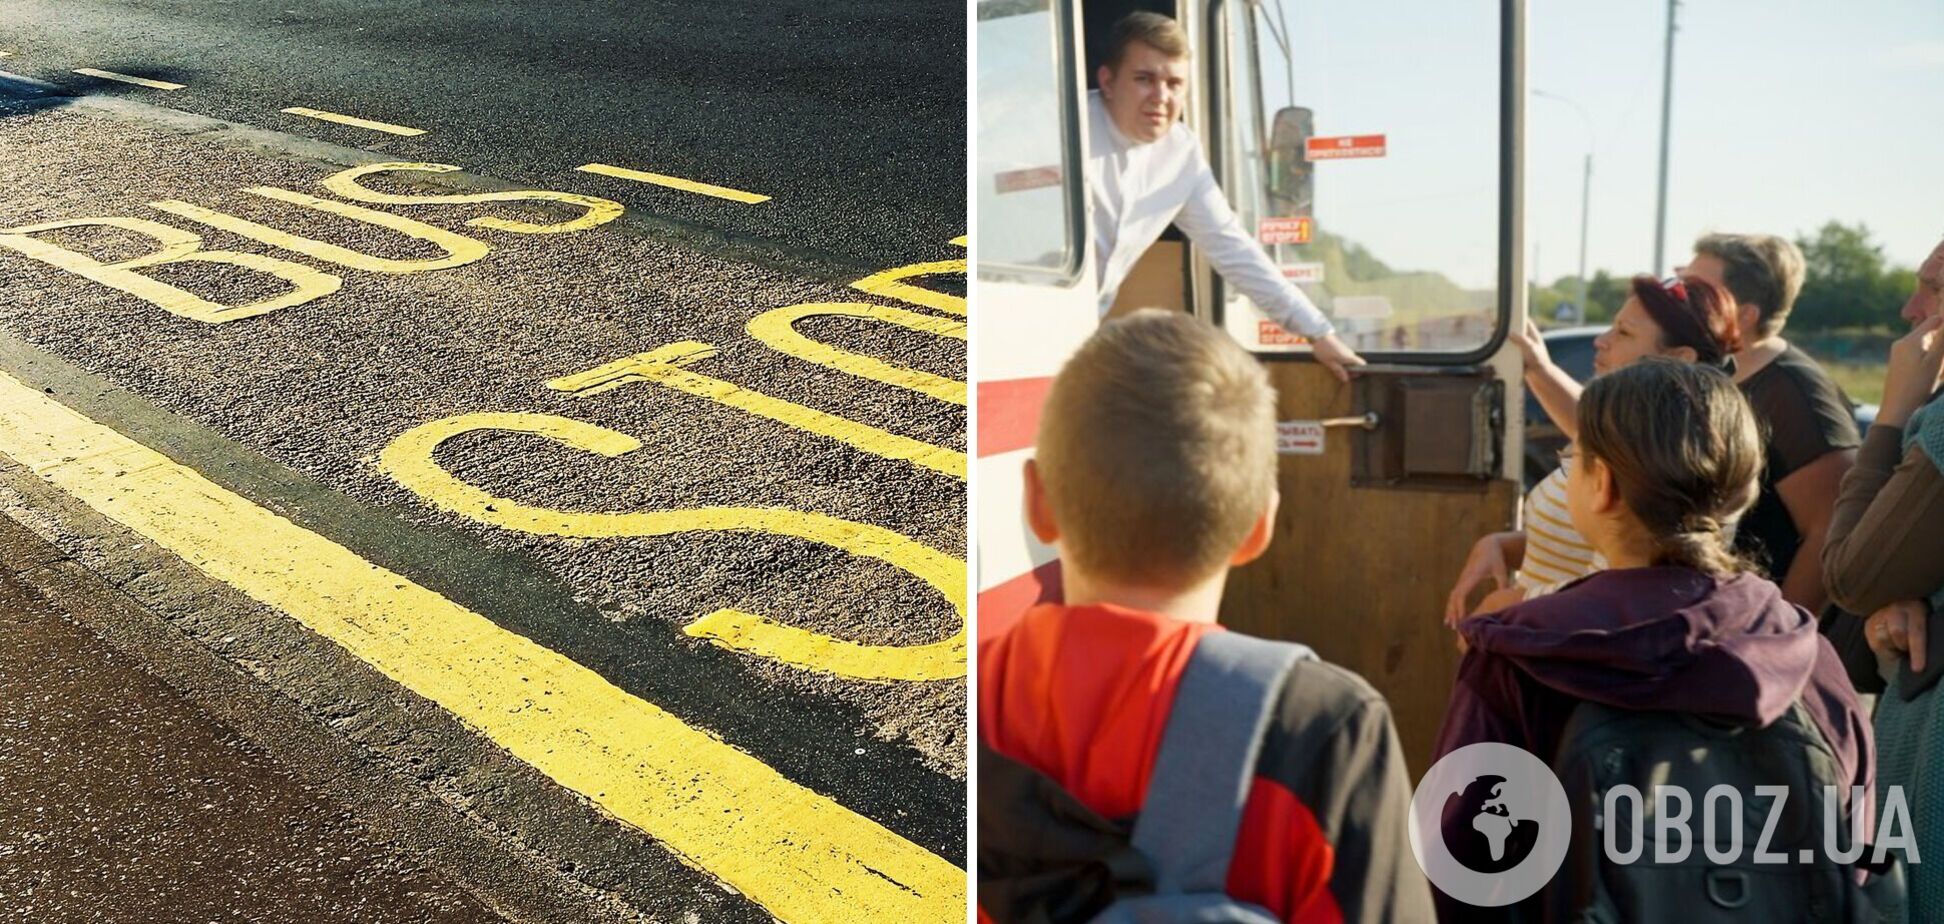 Под Черниговом детей перестали возить в школу: школьный автобус не останавливается, даже если есть свободные места. Что случилось